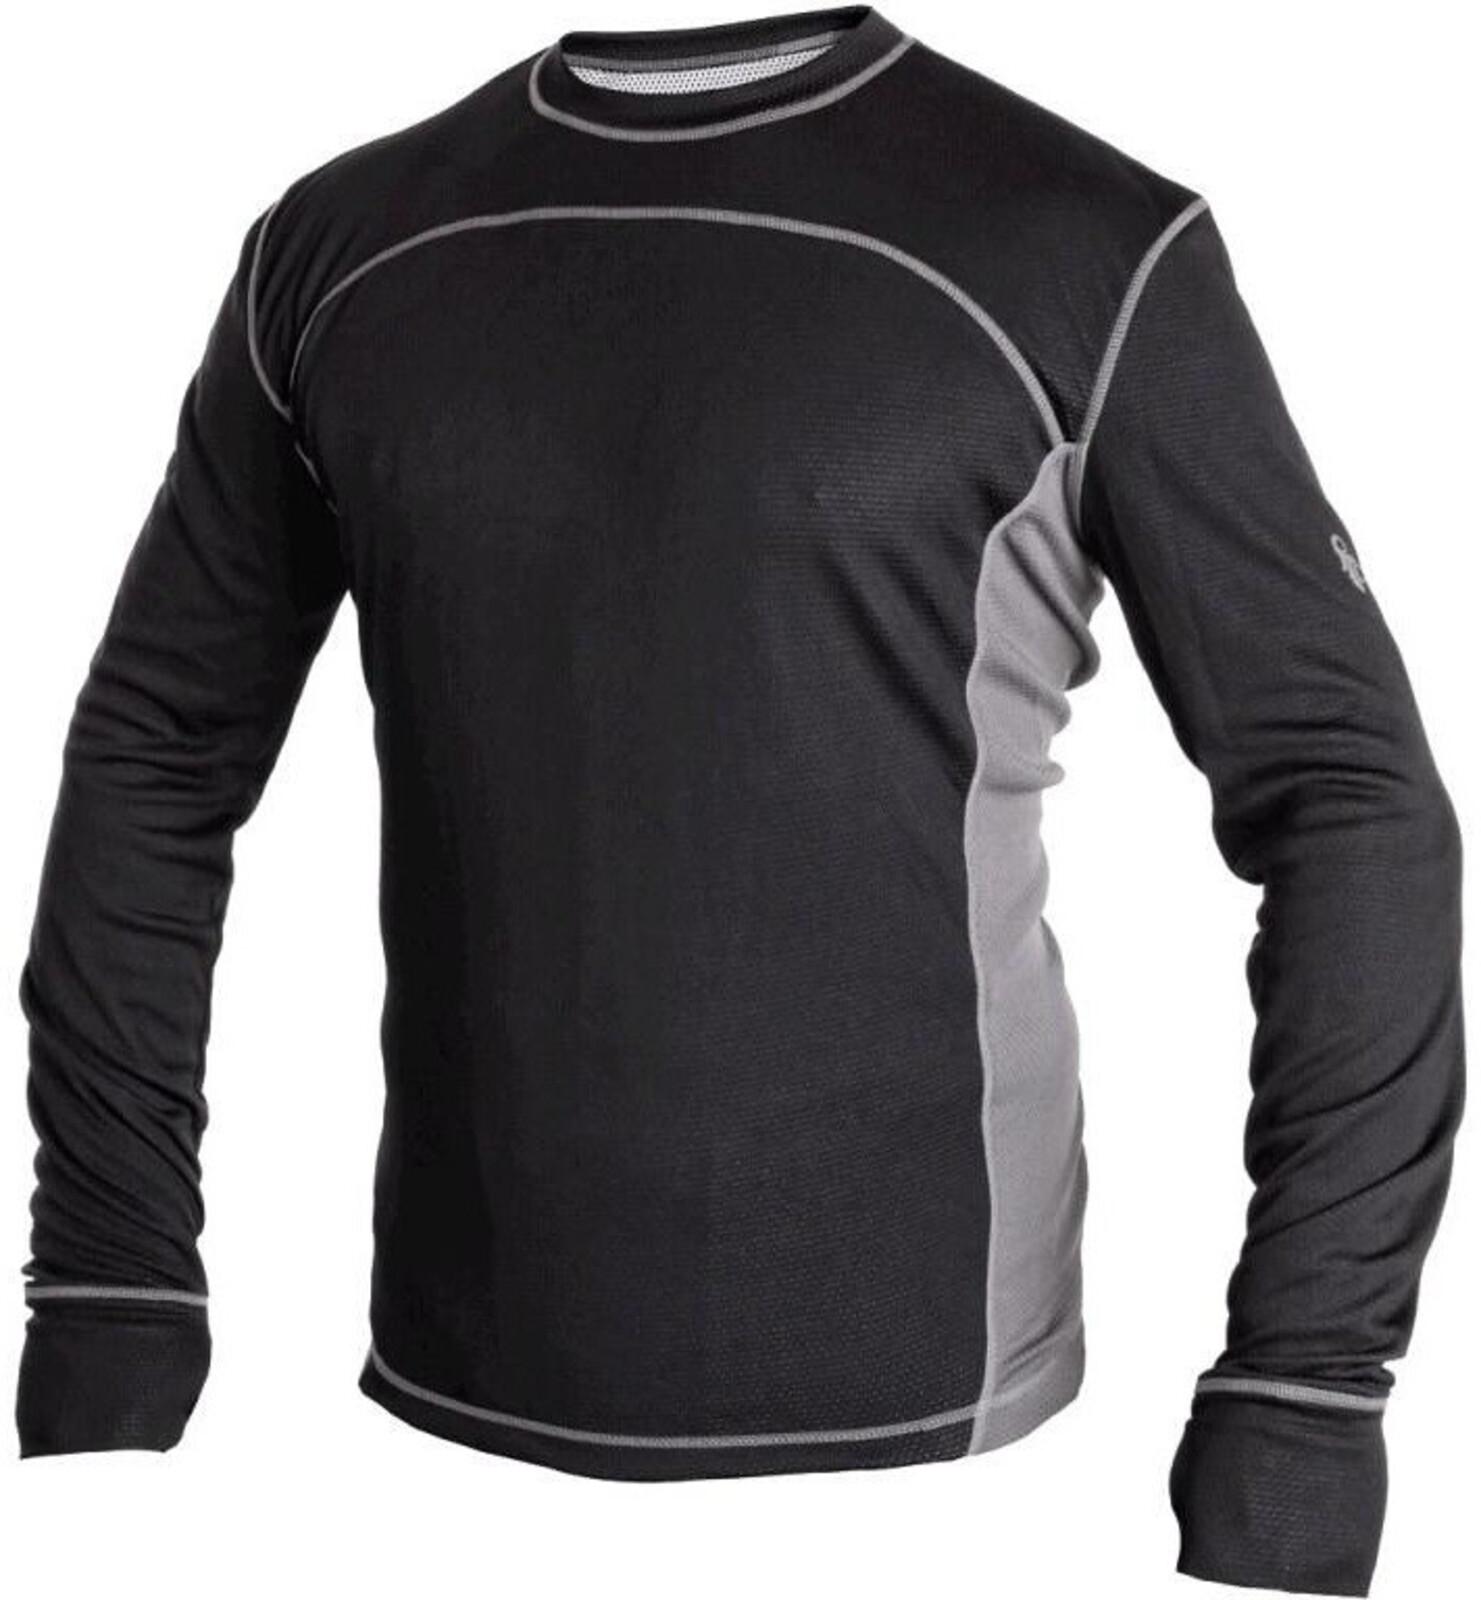 Pánske funkčné tričko s dlhým rukávom CXS Cooldry - veľkosť: XL, farba: čierna/sivá